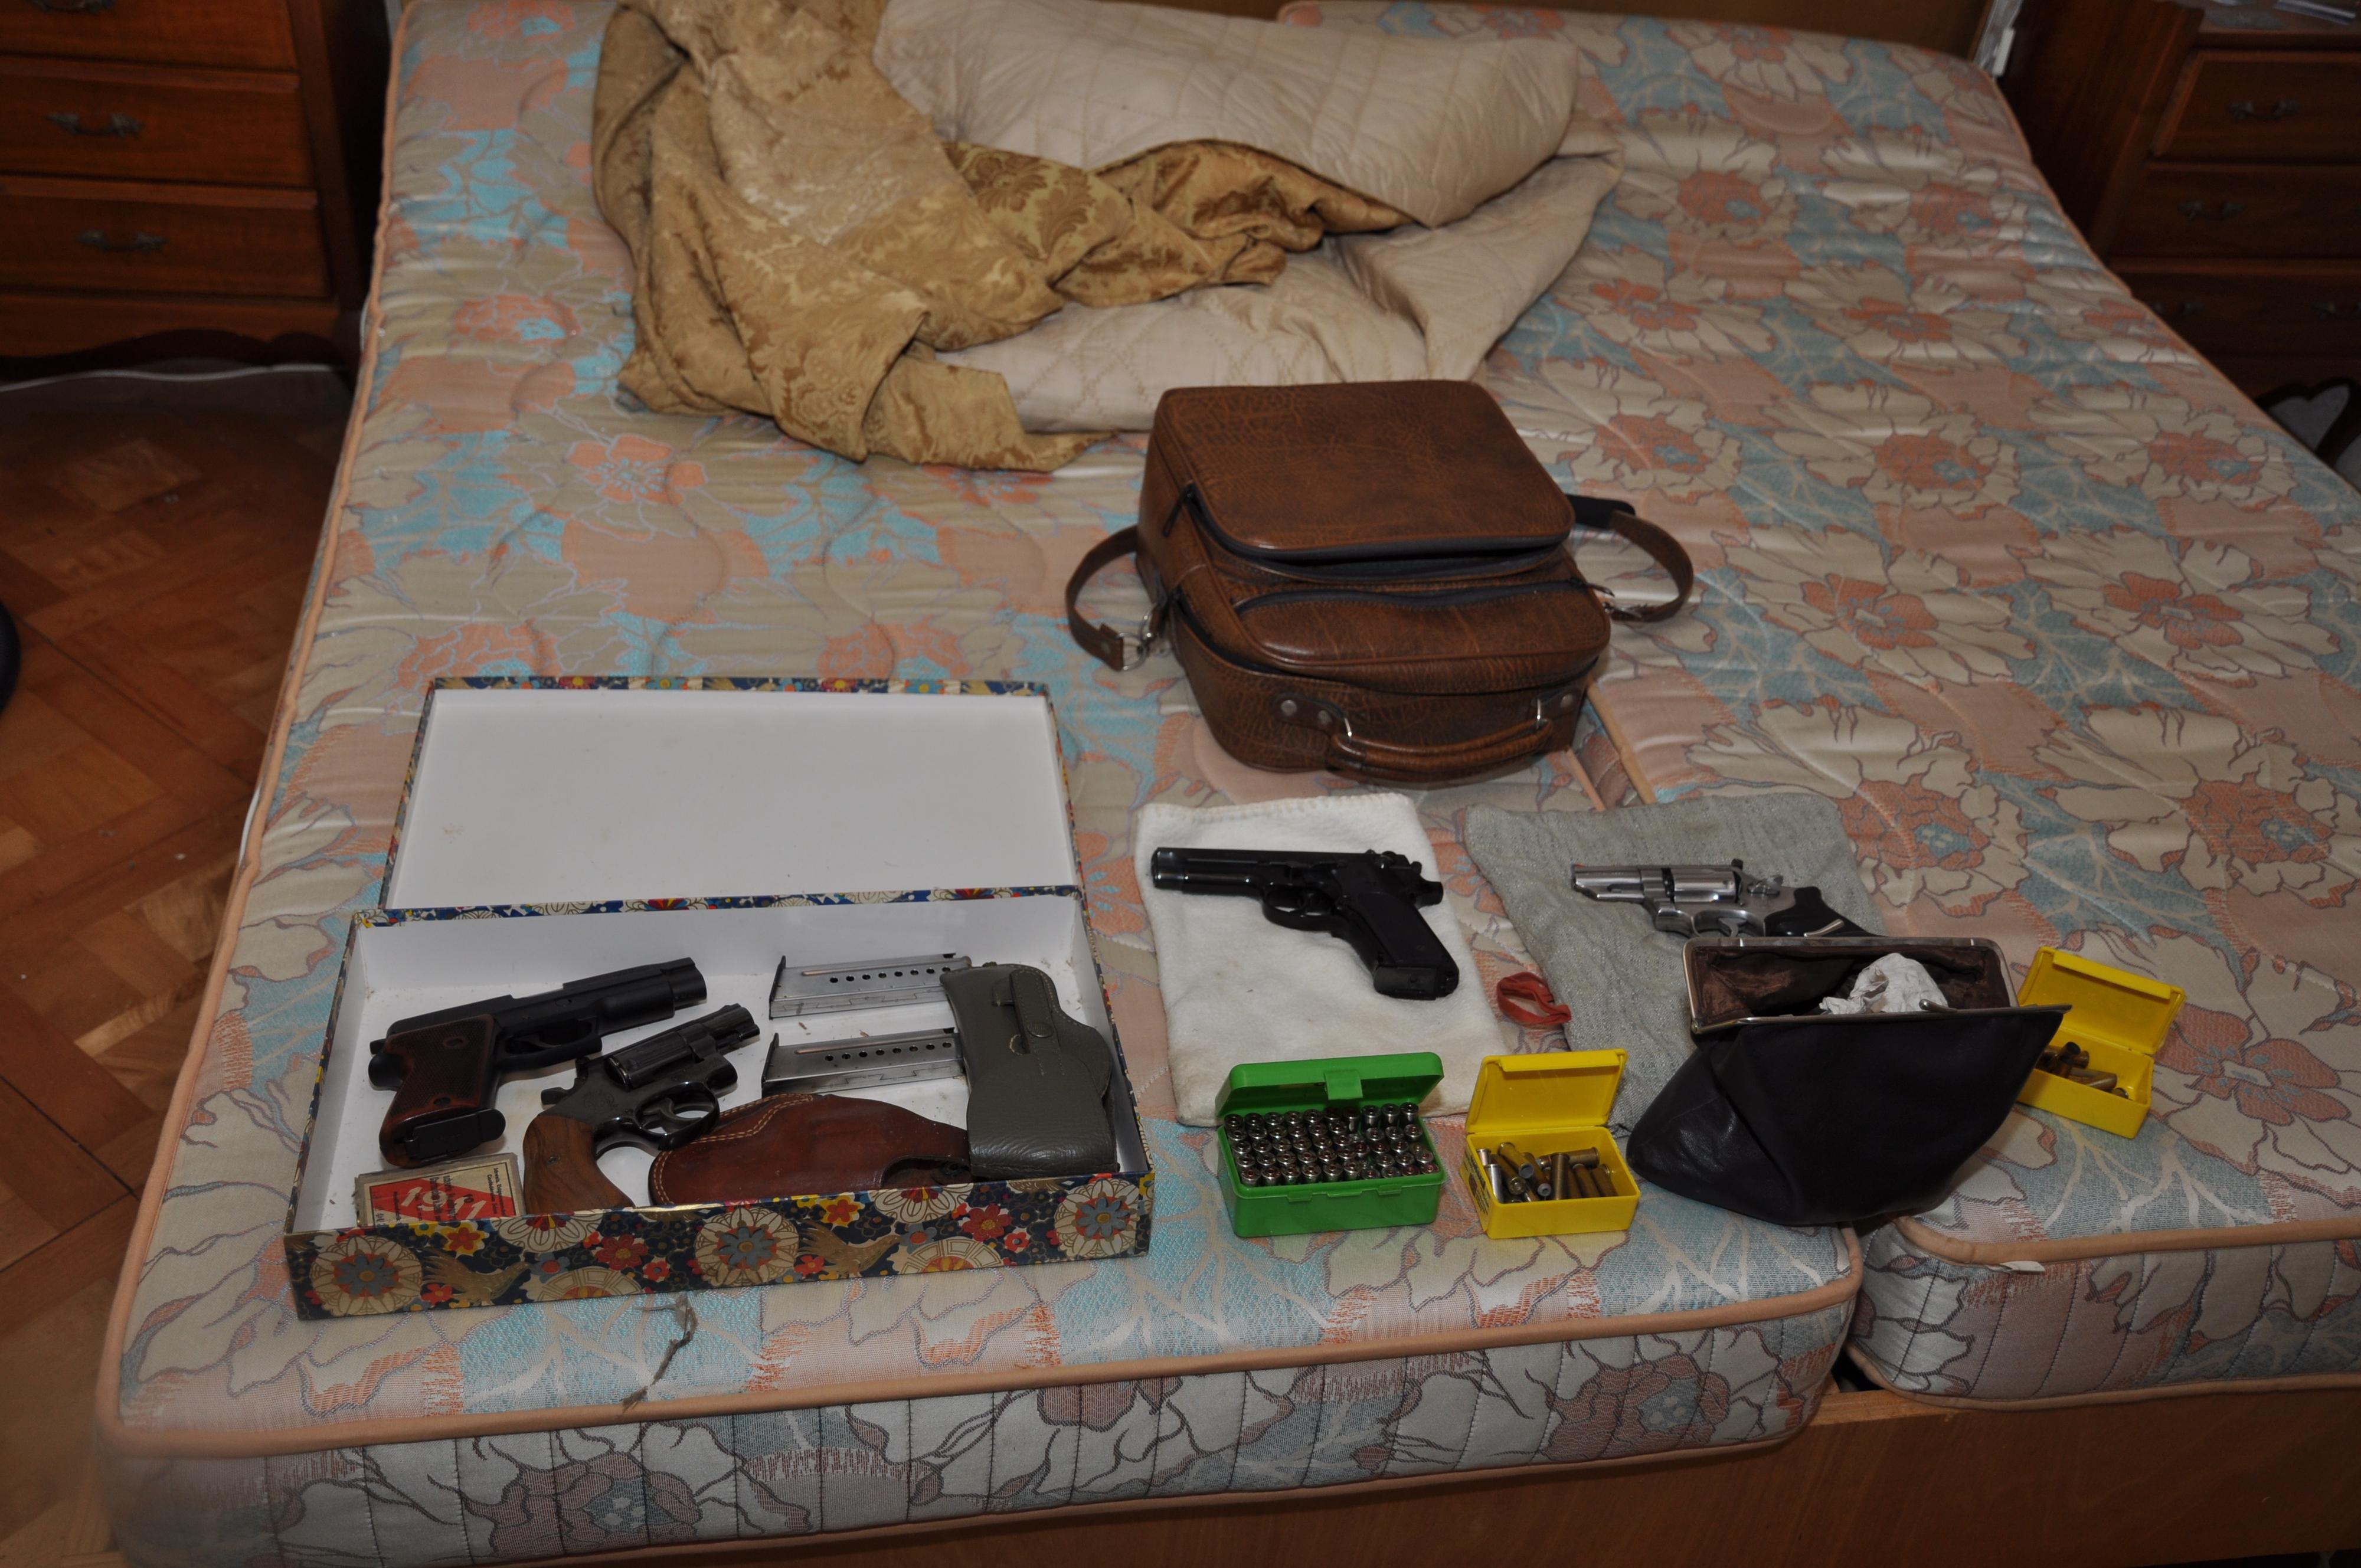 Mardi 14 septembre, des armes de poing et des munitions artisanales ont été trouvées lors d'une perquisition au domicile du forcené. [Police cantonale bernoise]